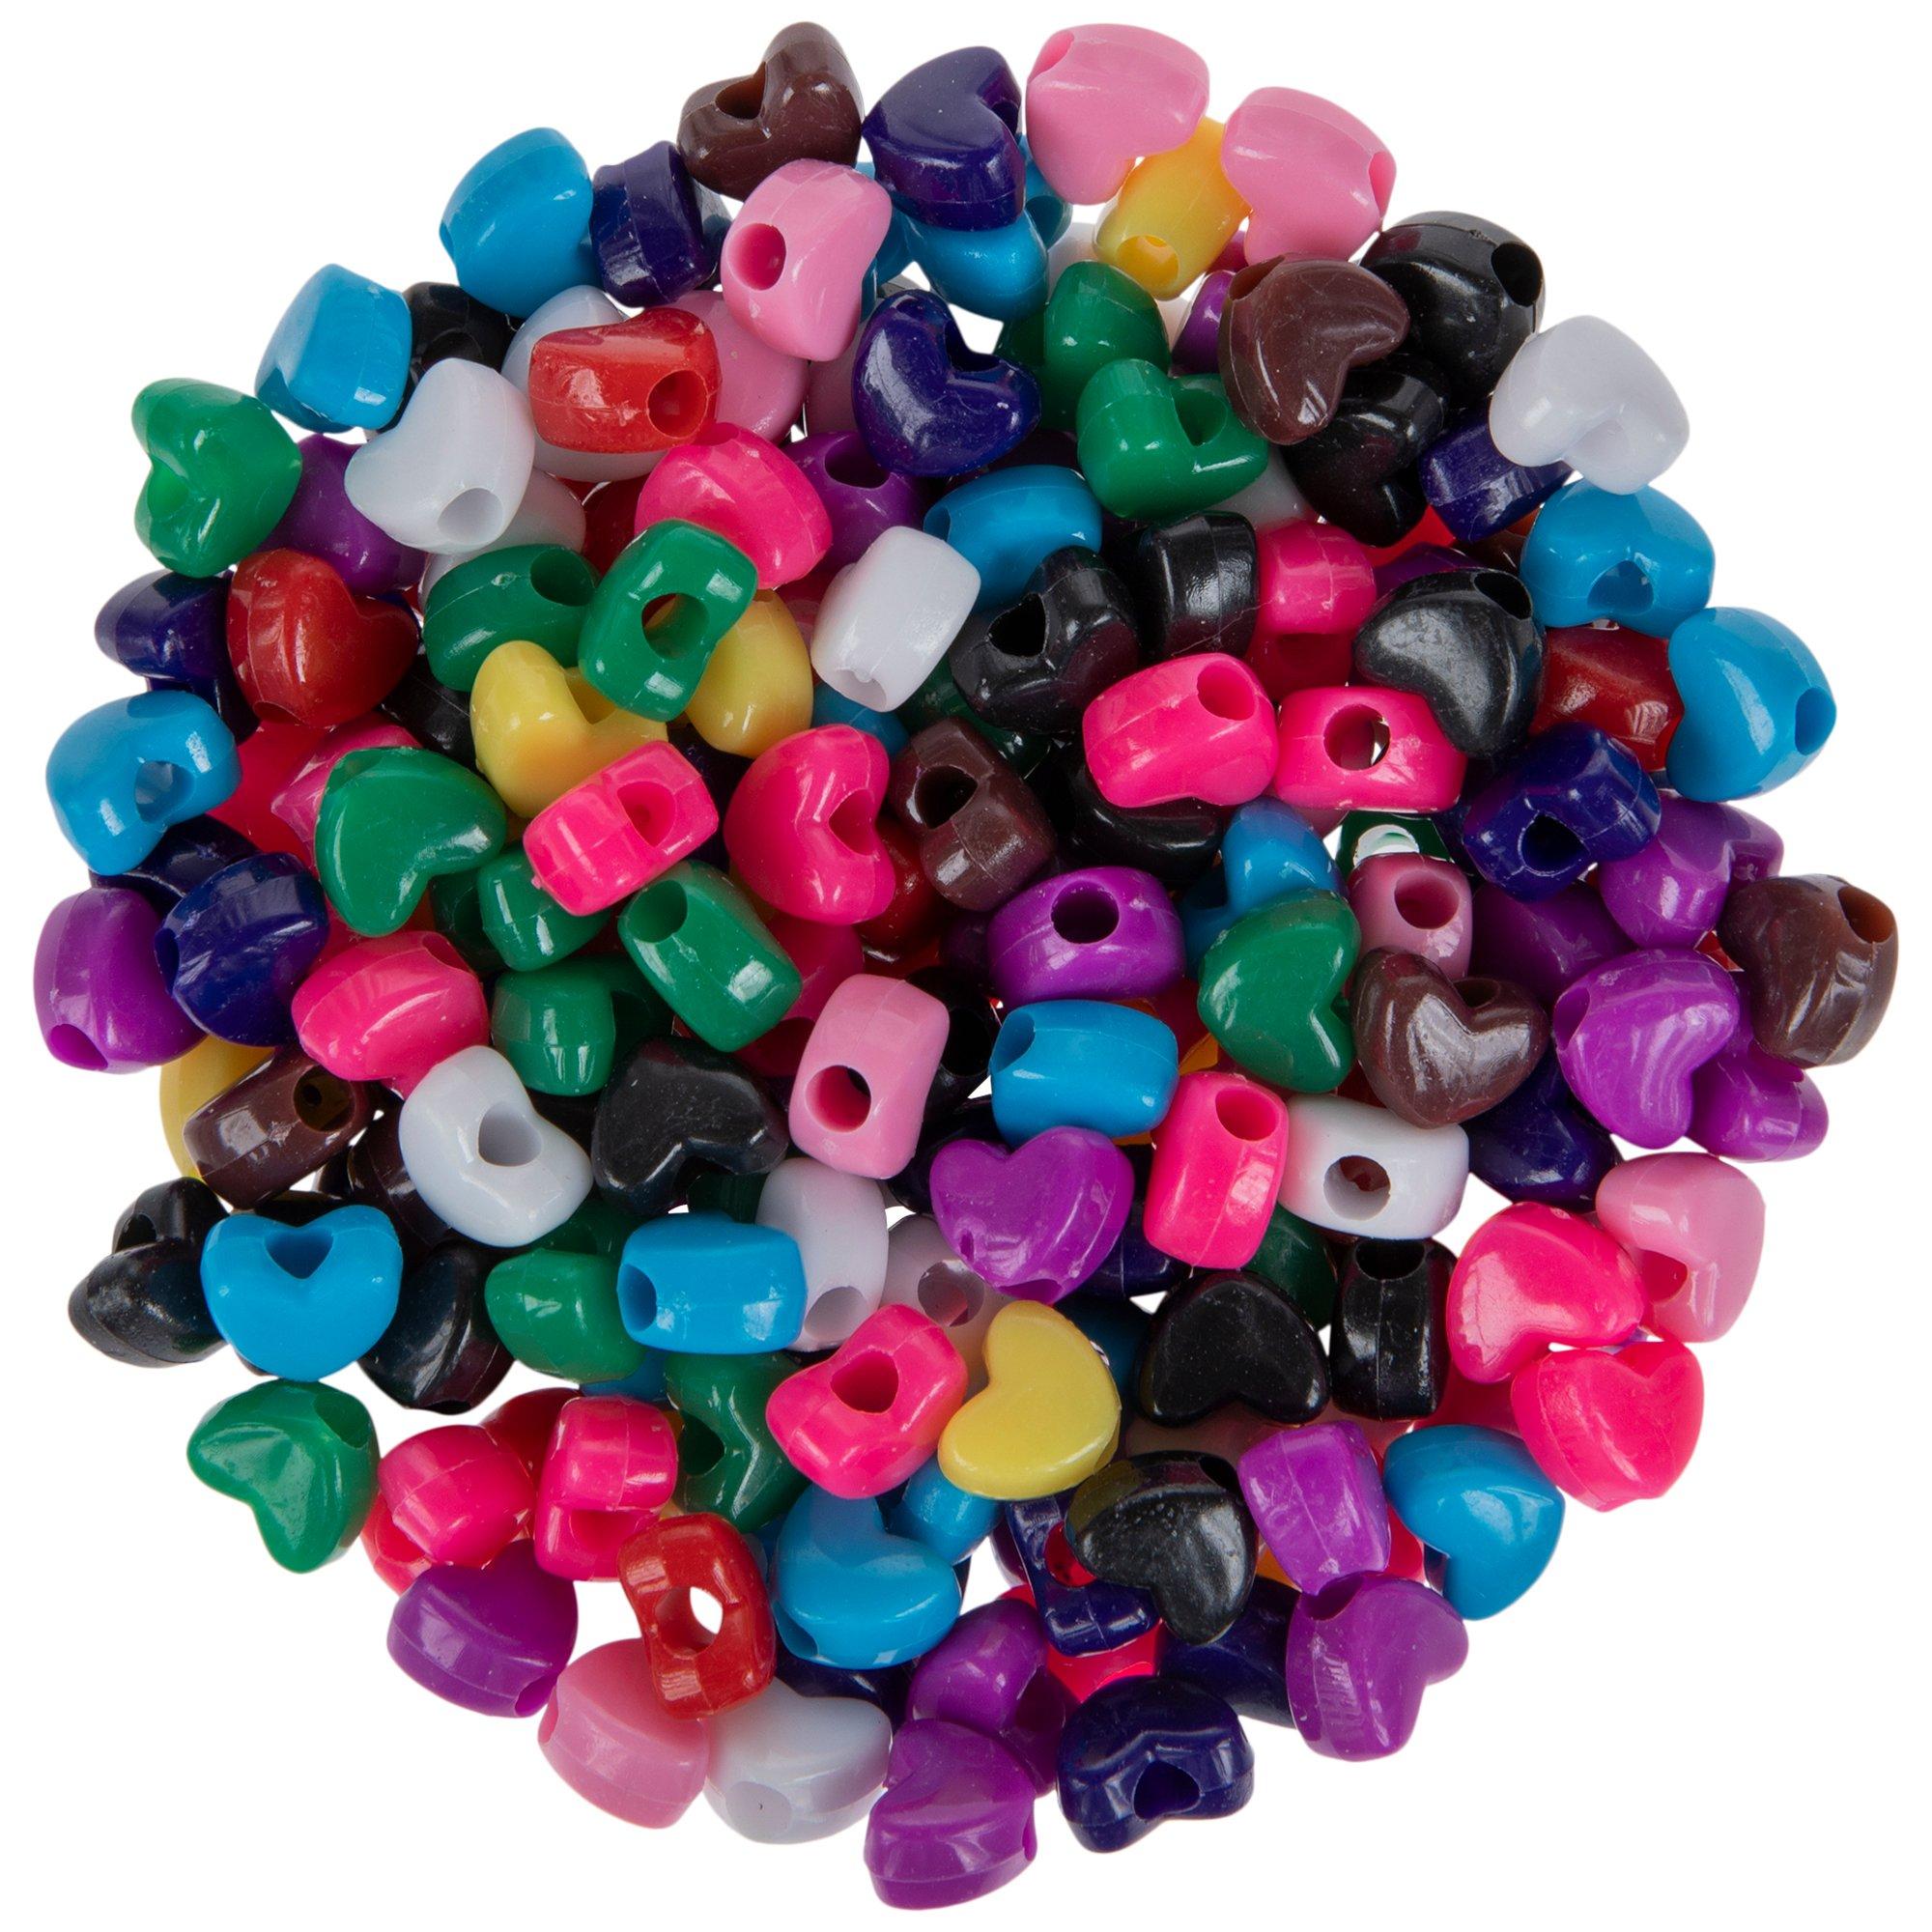 Bulk 600 Pc. Heart Shaped Pony Beads